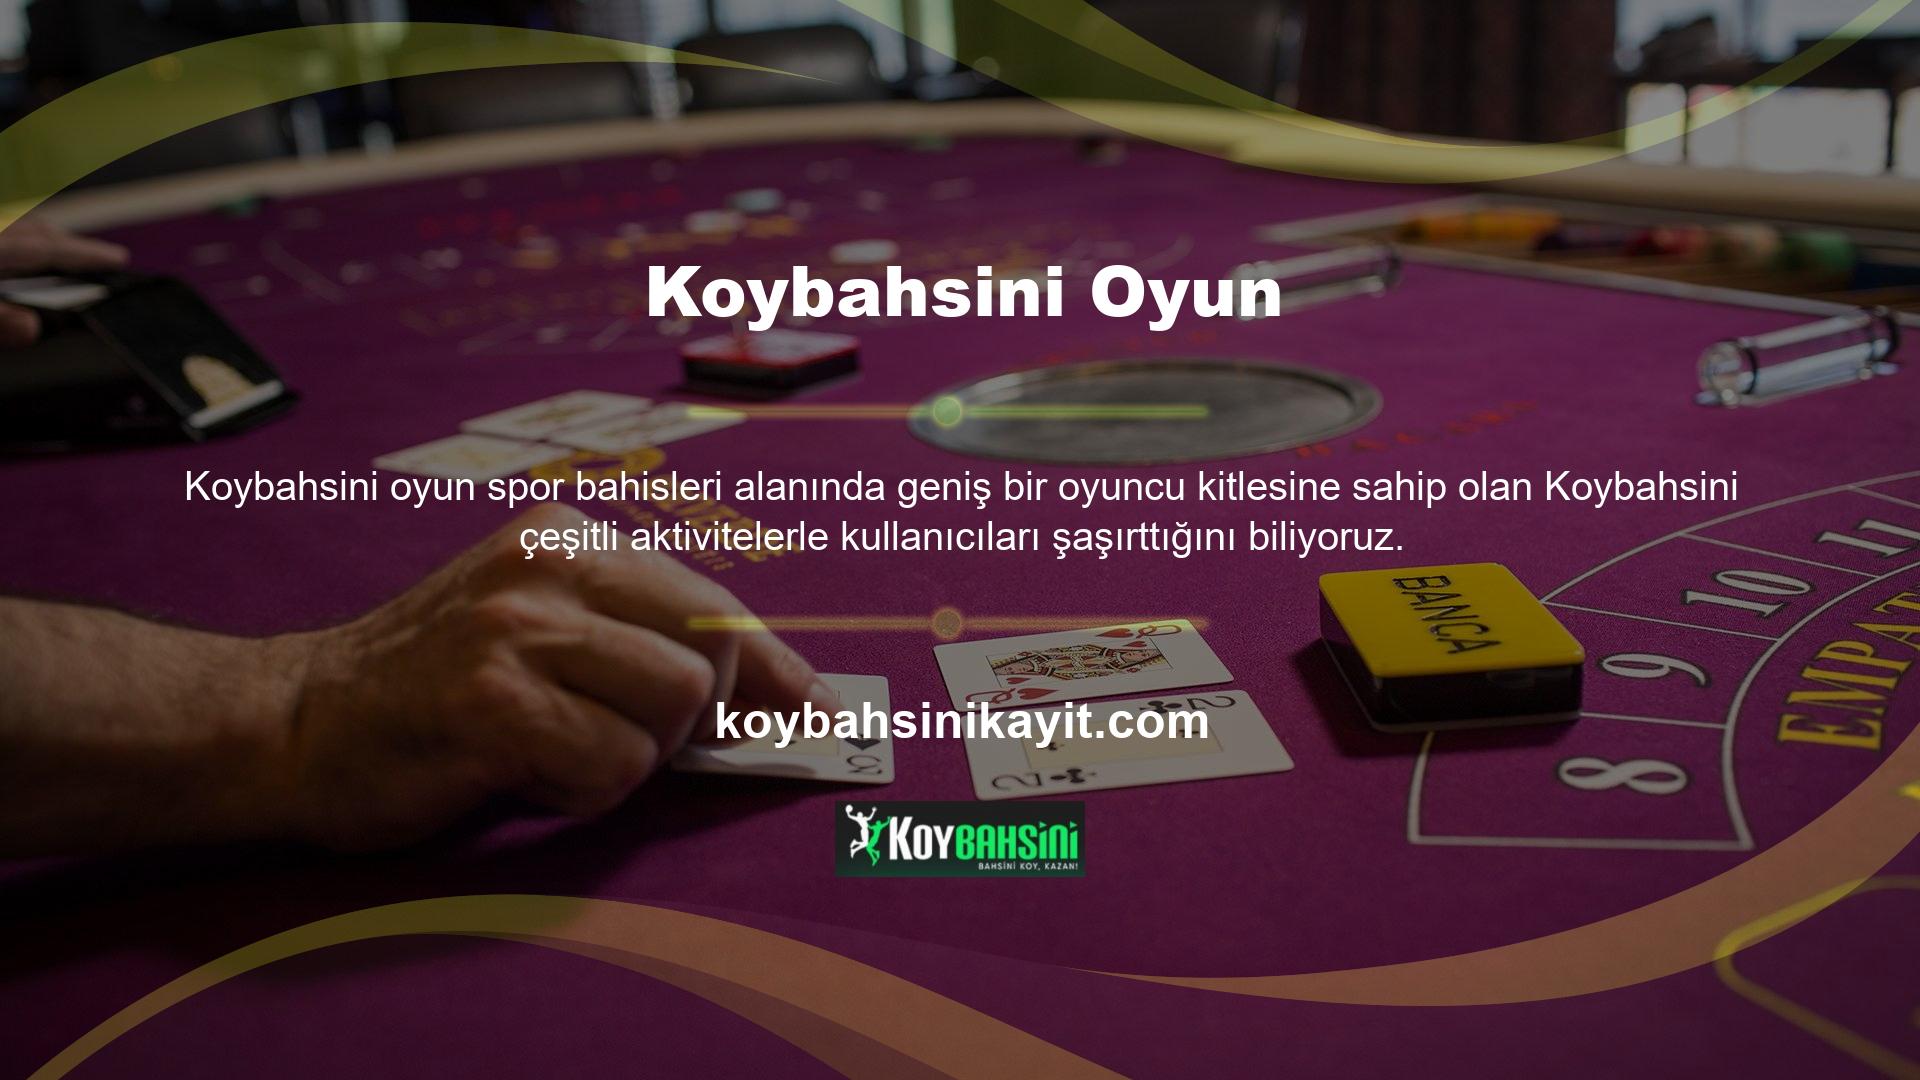 Son olarak, kullanıcılara katıldıkları yeni Koybahsini grup turnuvalarında verilen ödüller hakkında bilgiler yer almaktadır